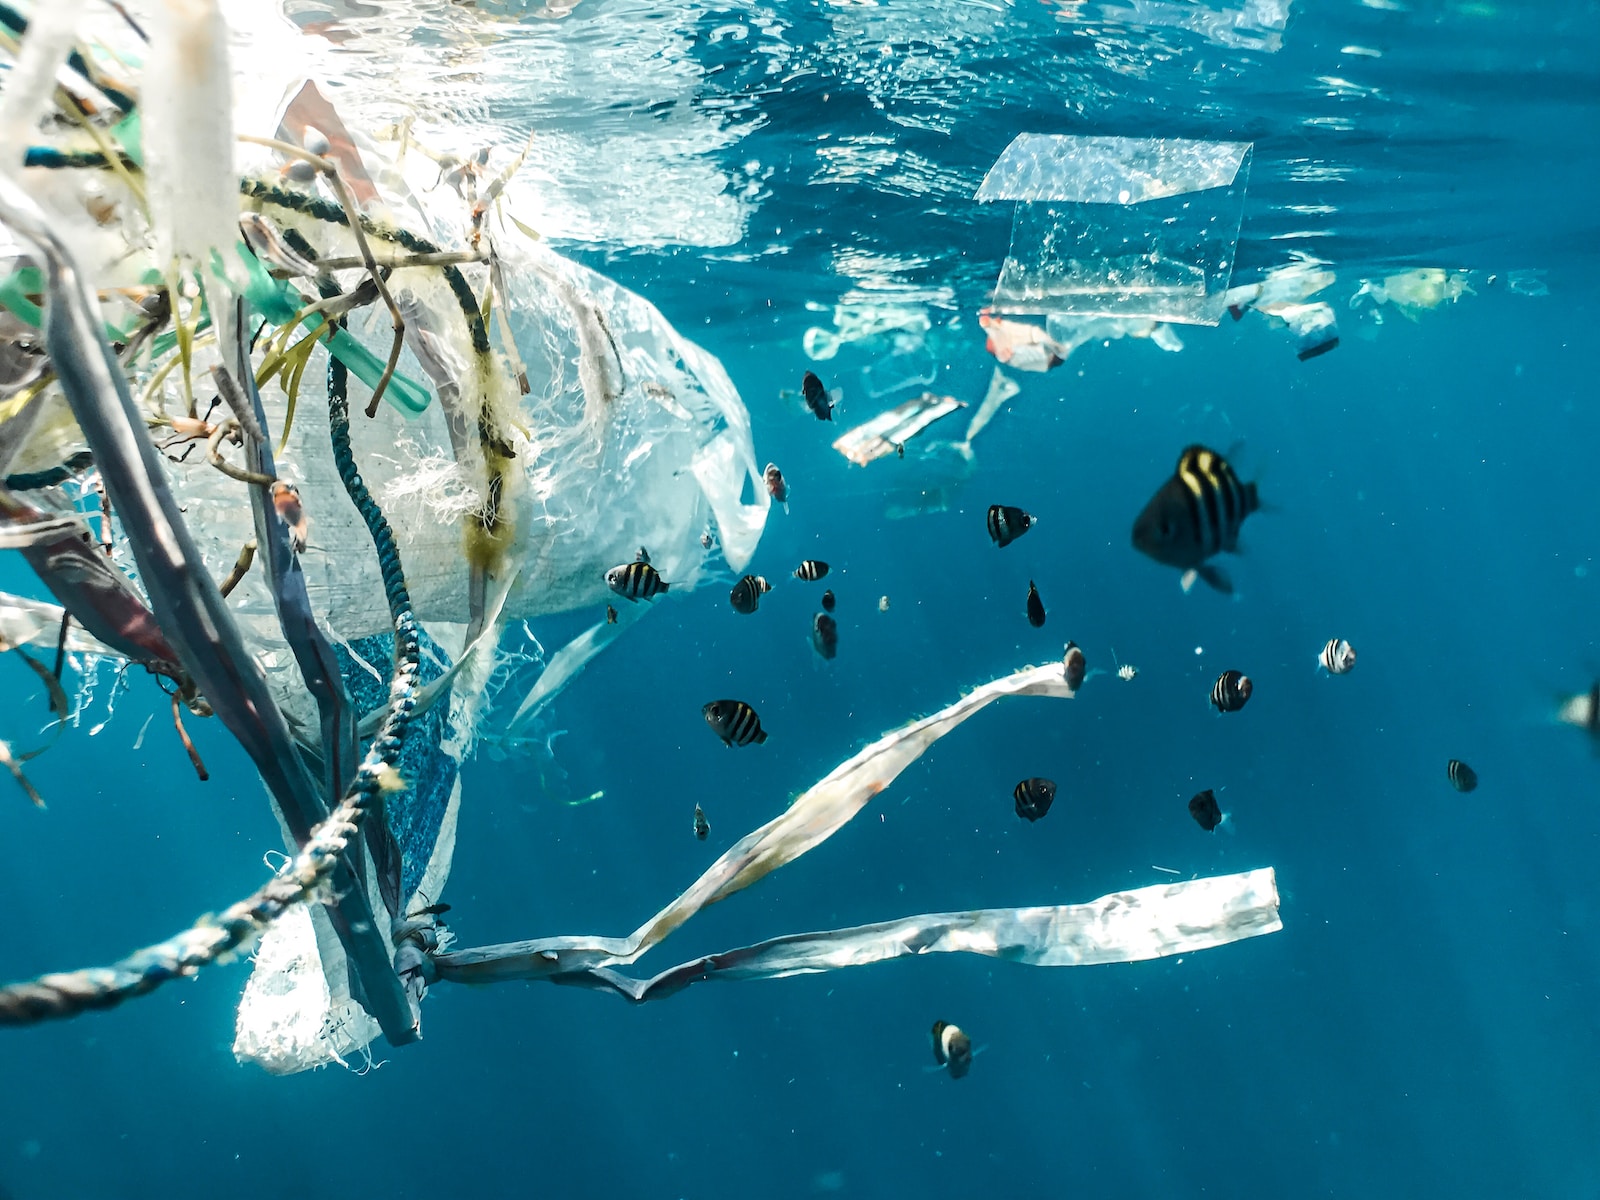 Bioplastiques : vers une étape clé pour la durabilité environnementale ?